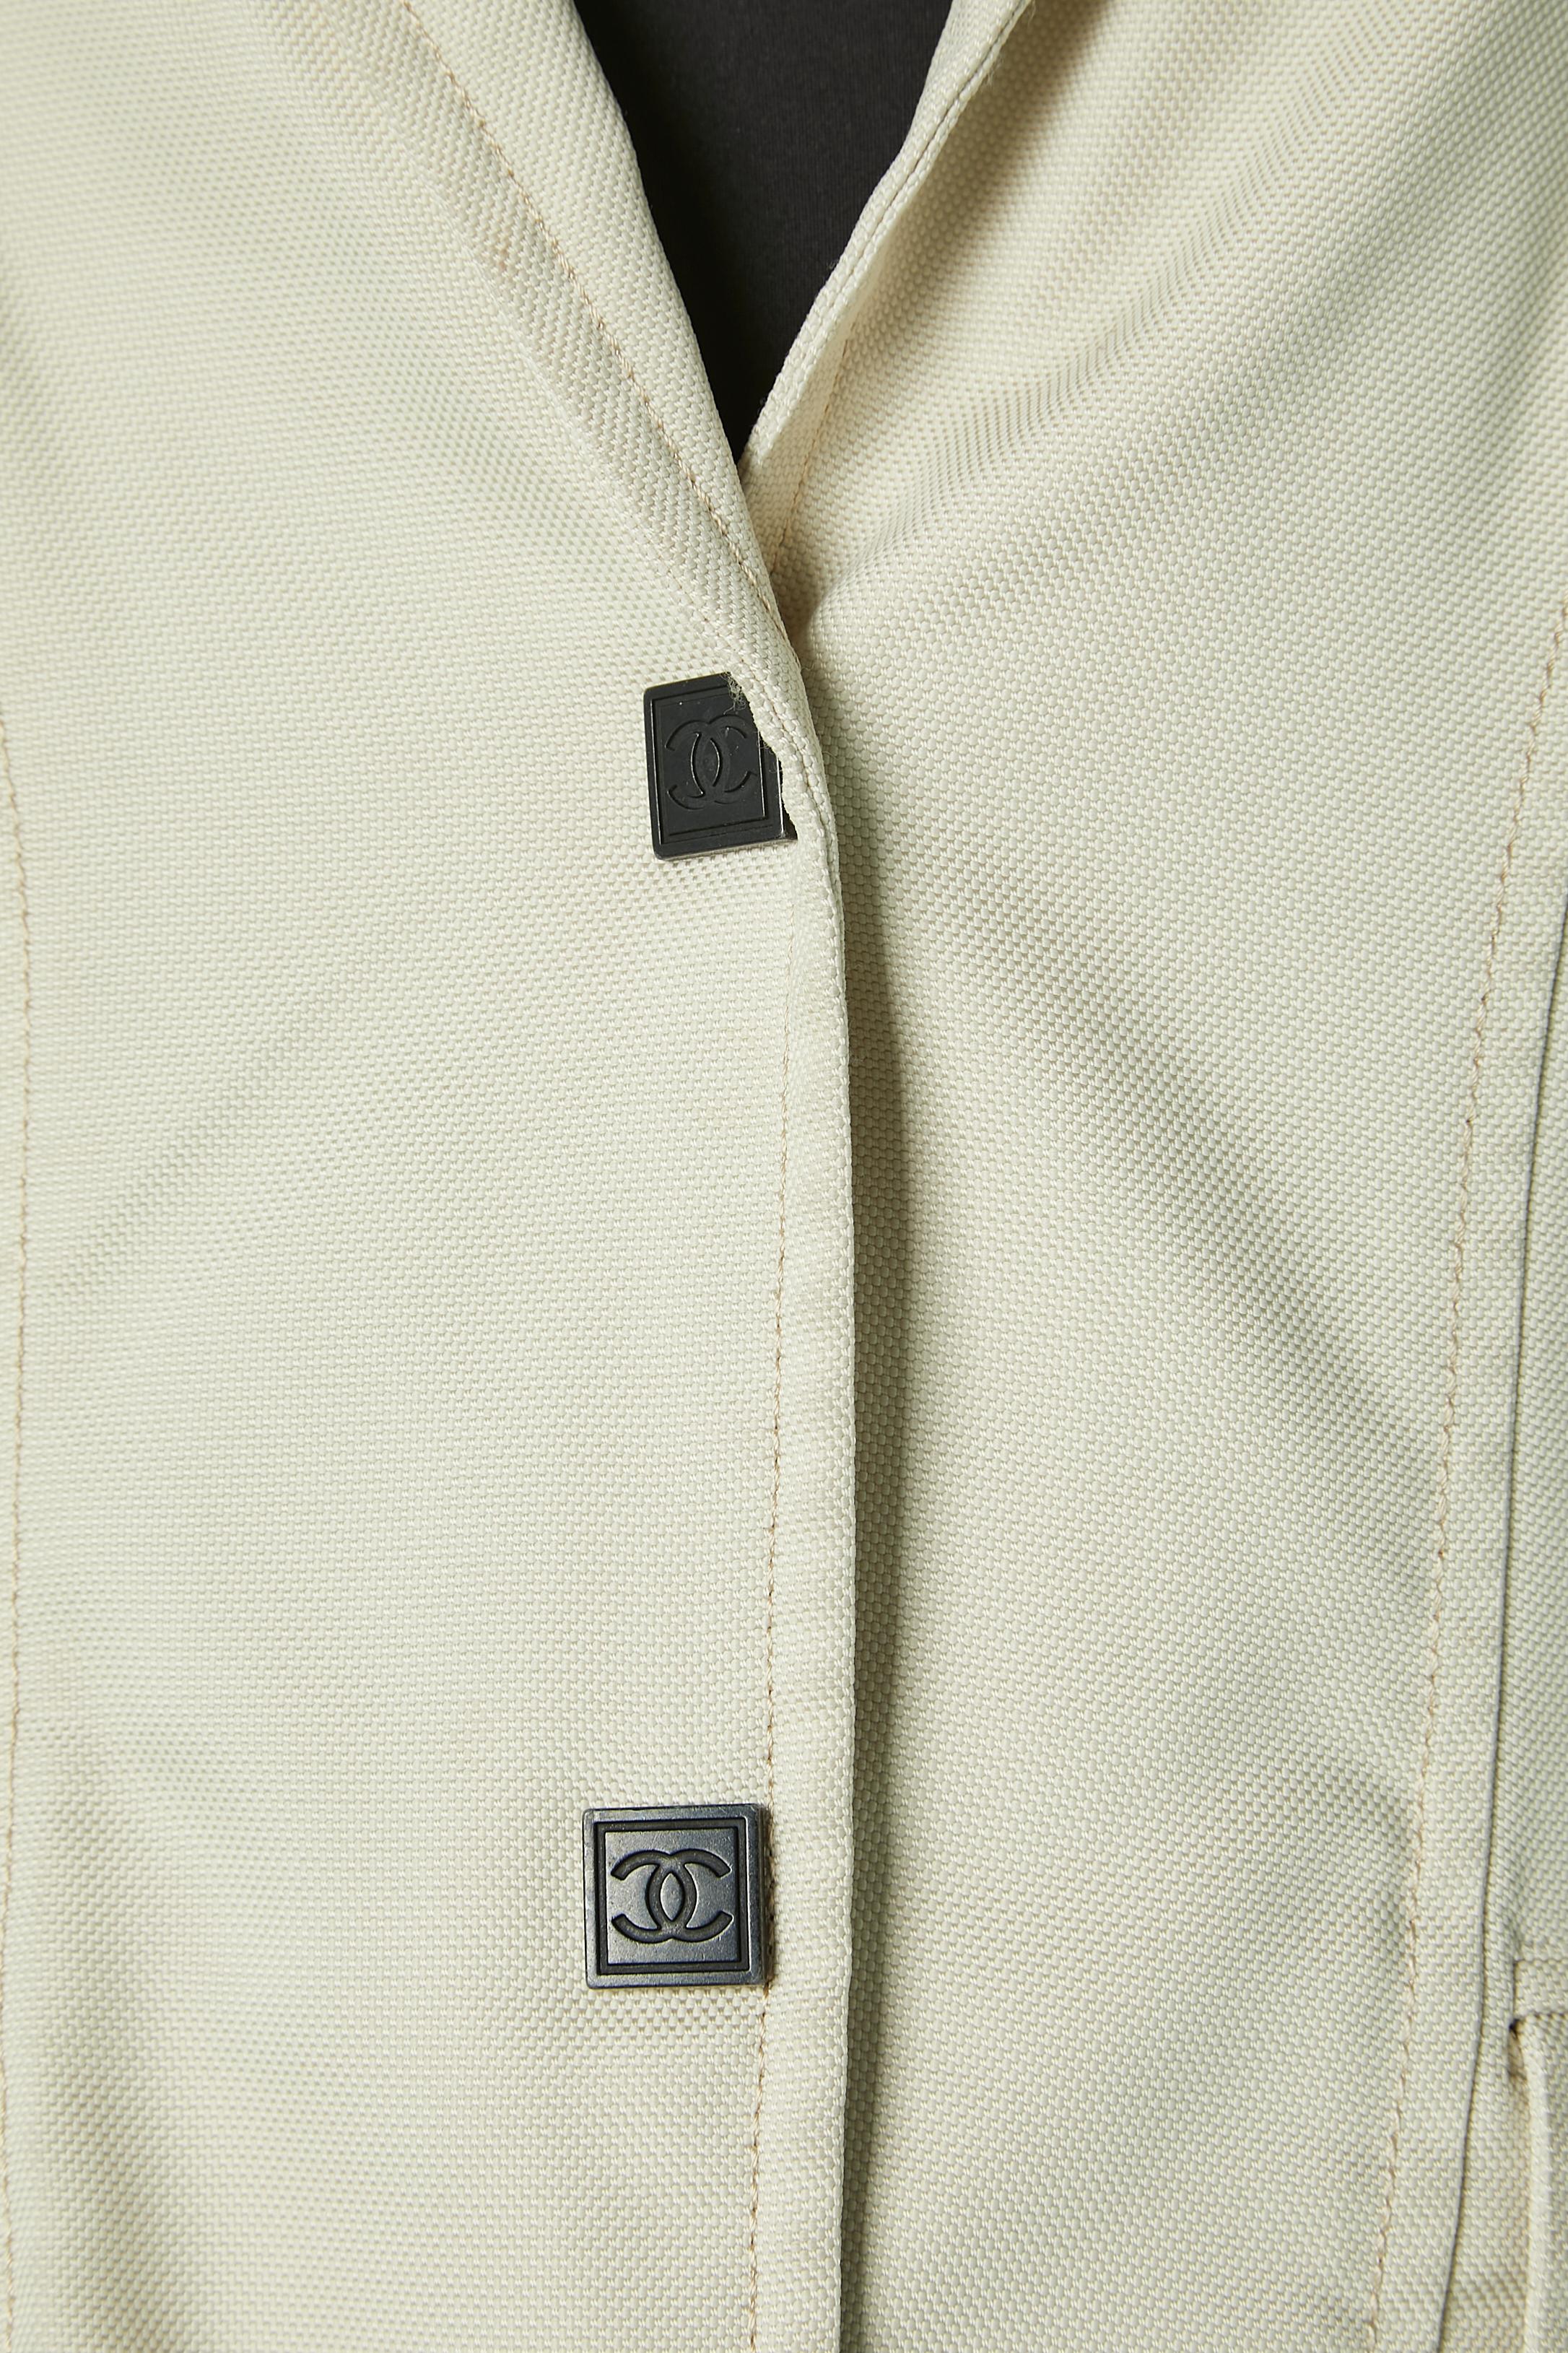 Veste croisée blanc cassé avec boutons-pression et passepoils de marque . Composition du tissu : 100% polyamide 
Surpiqûres et découpes. Poches sur les deux côtés. 
TAILLE 42 (Fr) 12 (US)